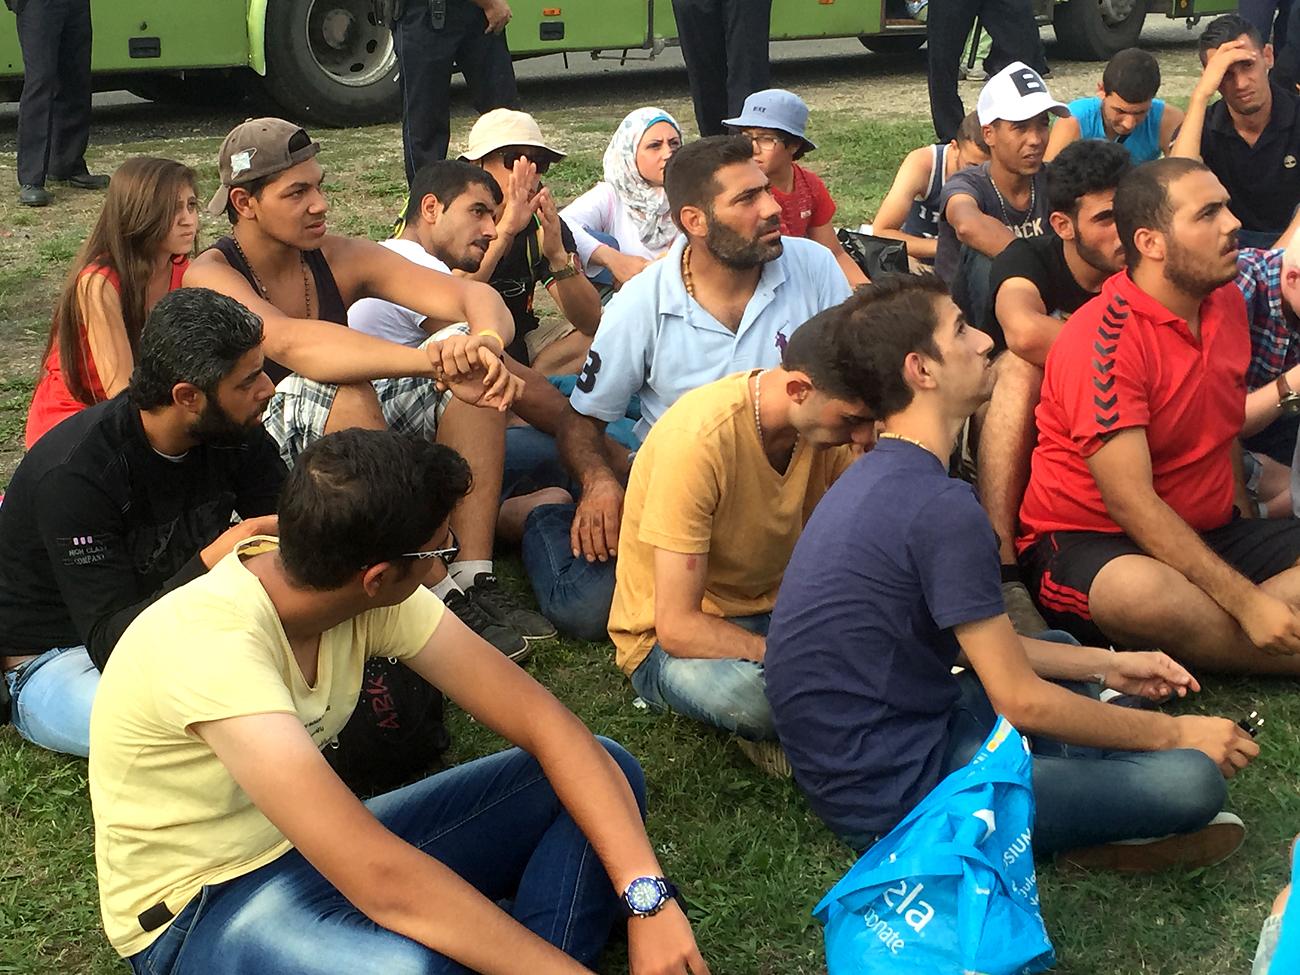 A menekültek tiltakozásképp leültek a földre